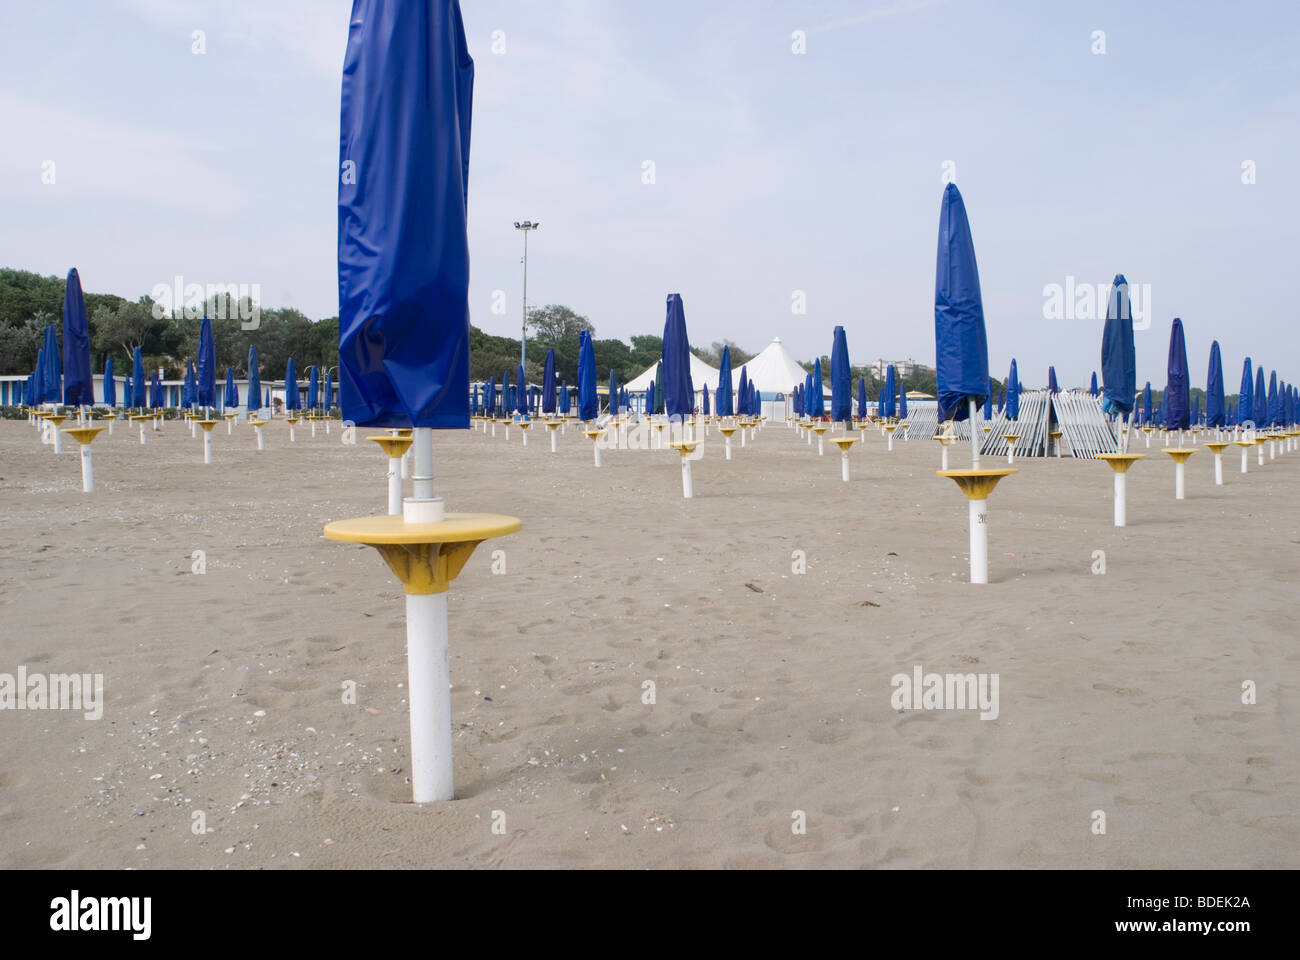 rows of folded sunshades in Venice Lido - Italy Stock Photo